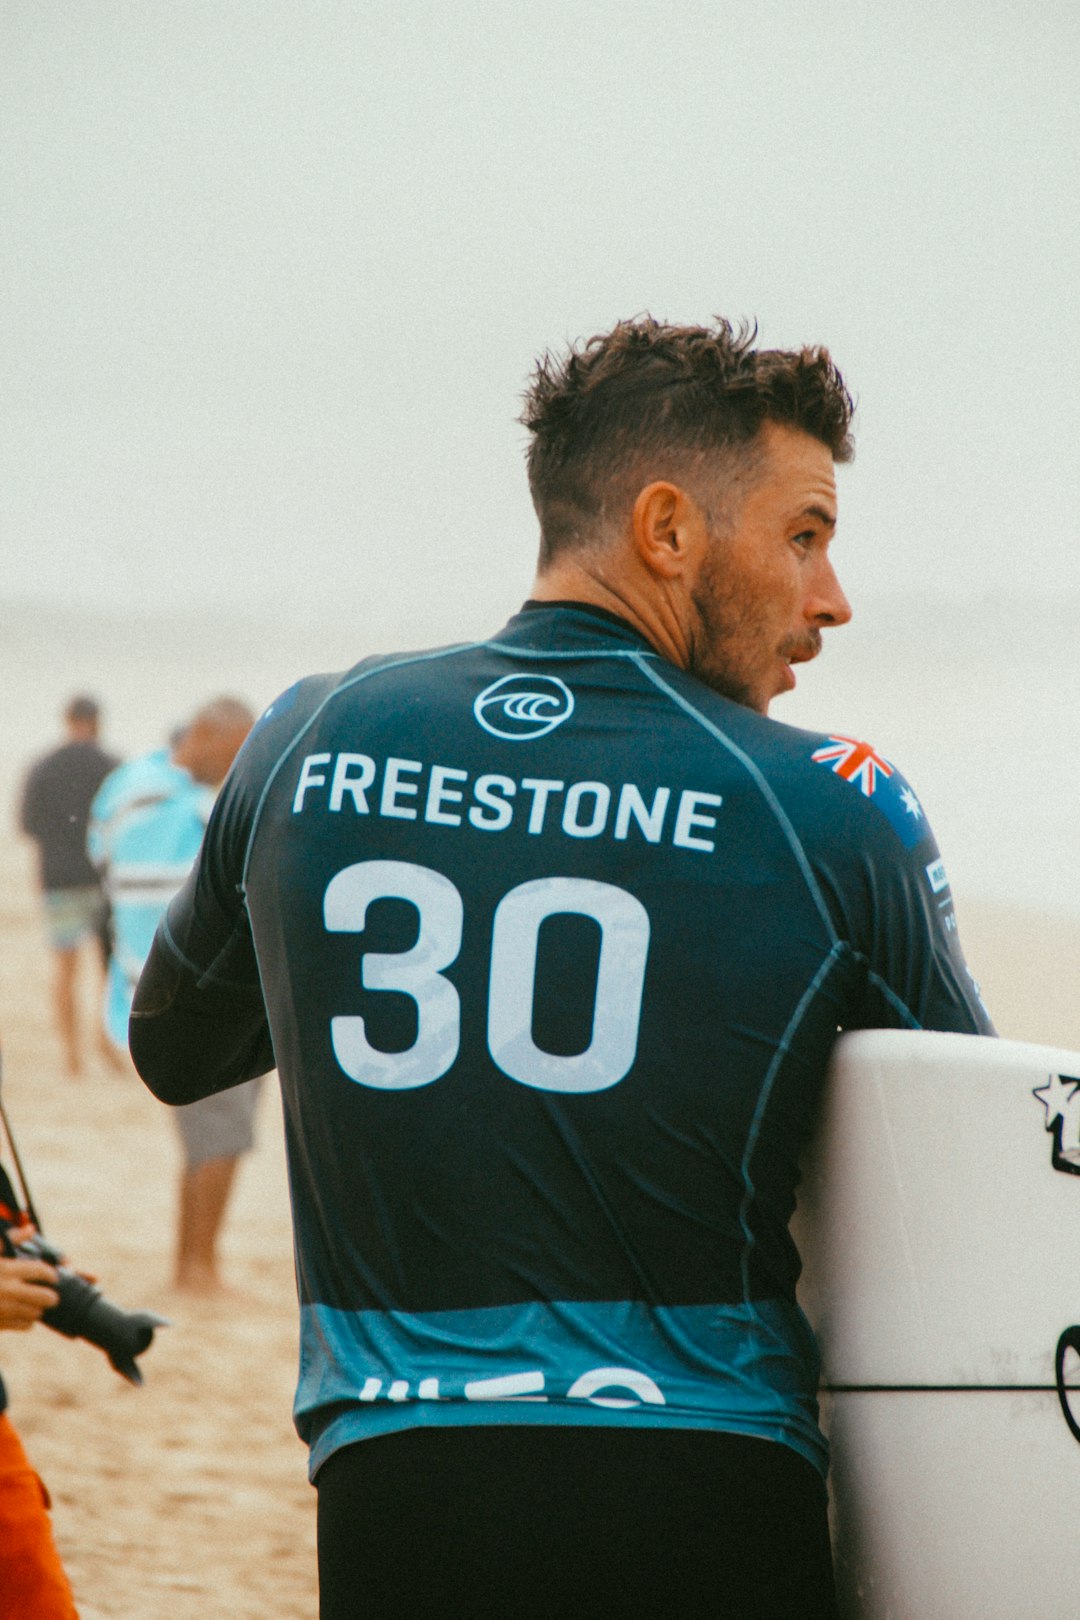 man wearing Freestone 30 jersey near people